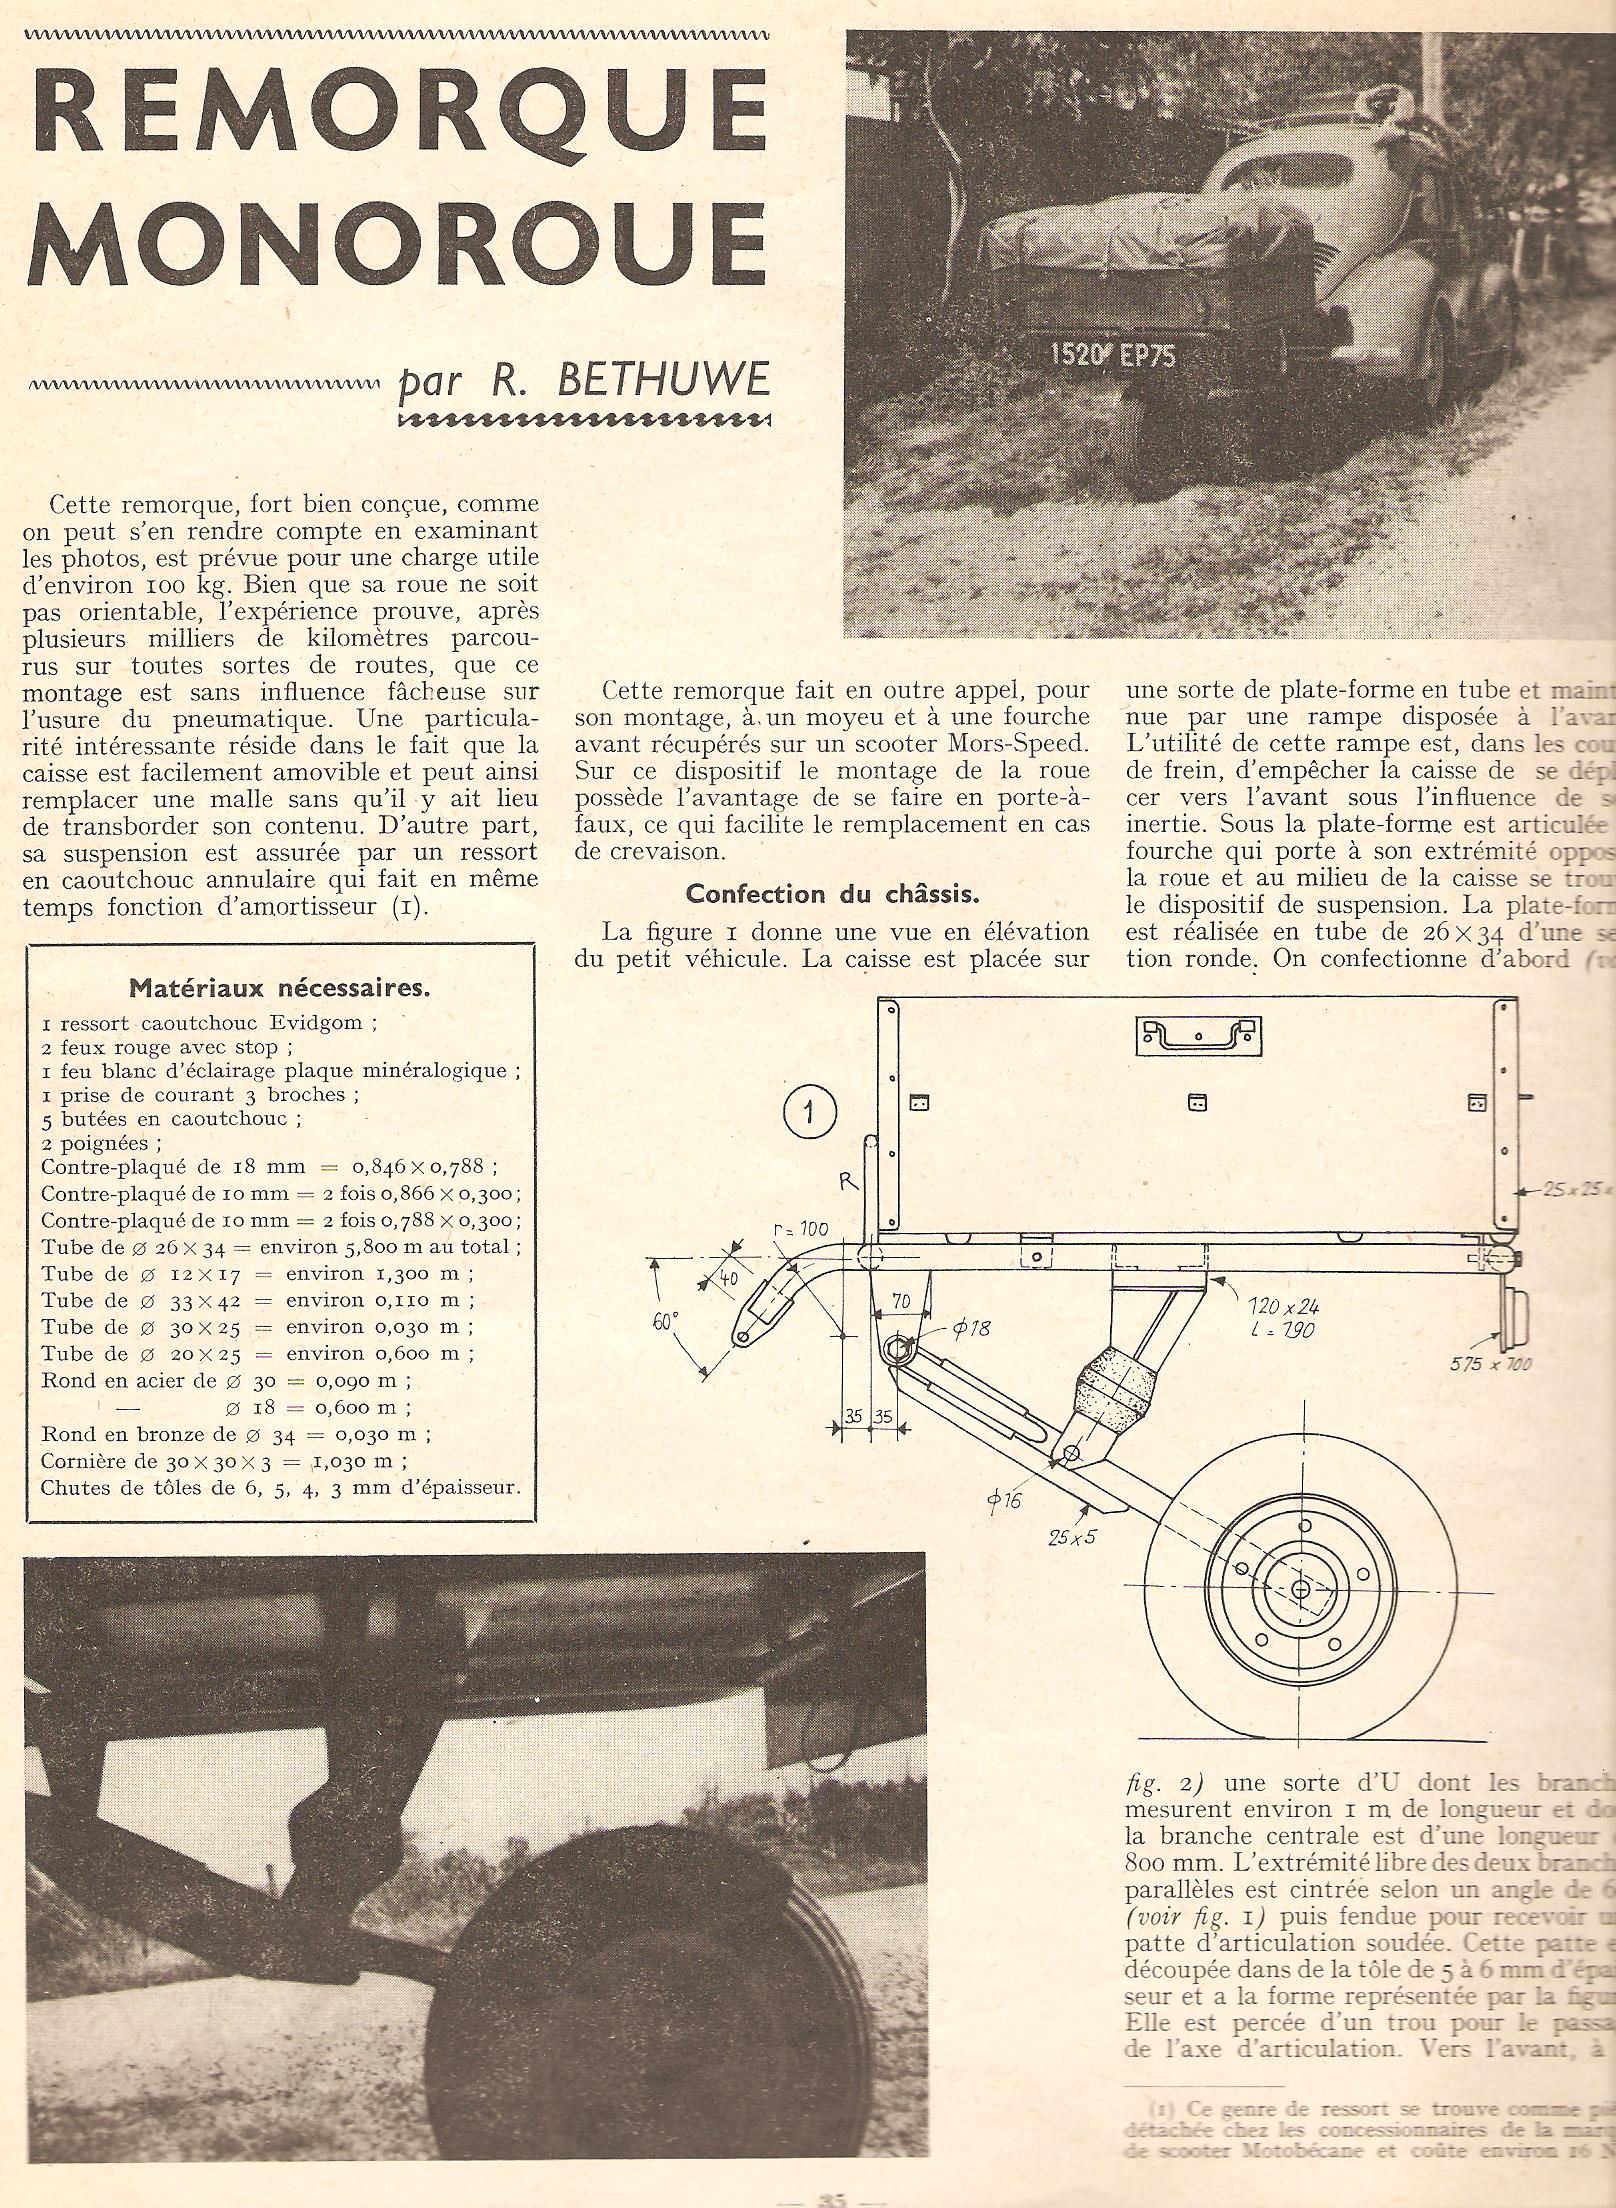 remorque monoroue page 35 système D 1963